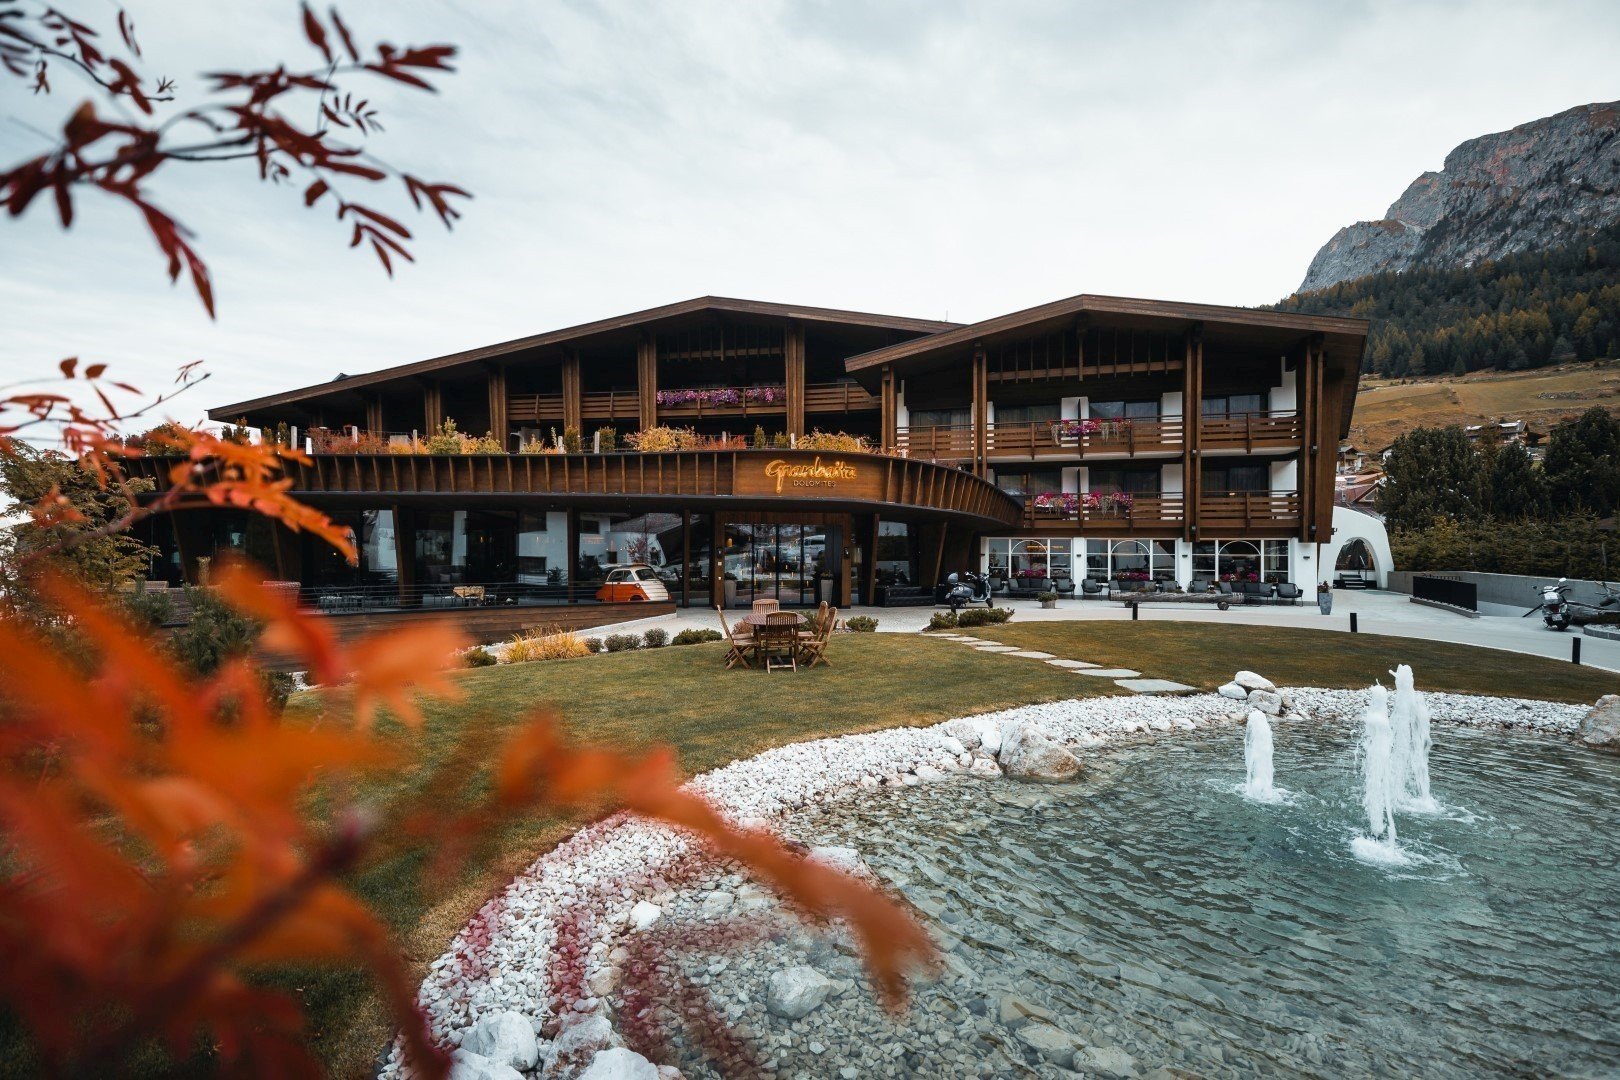 Burning Dolomites: all’Hotel Granbaita Dolomites di Selva di Val Gardena per godere lo straordinario spettacolo dell’autunno